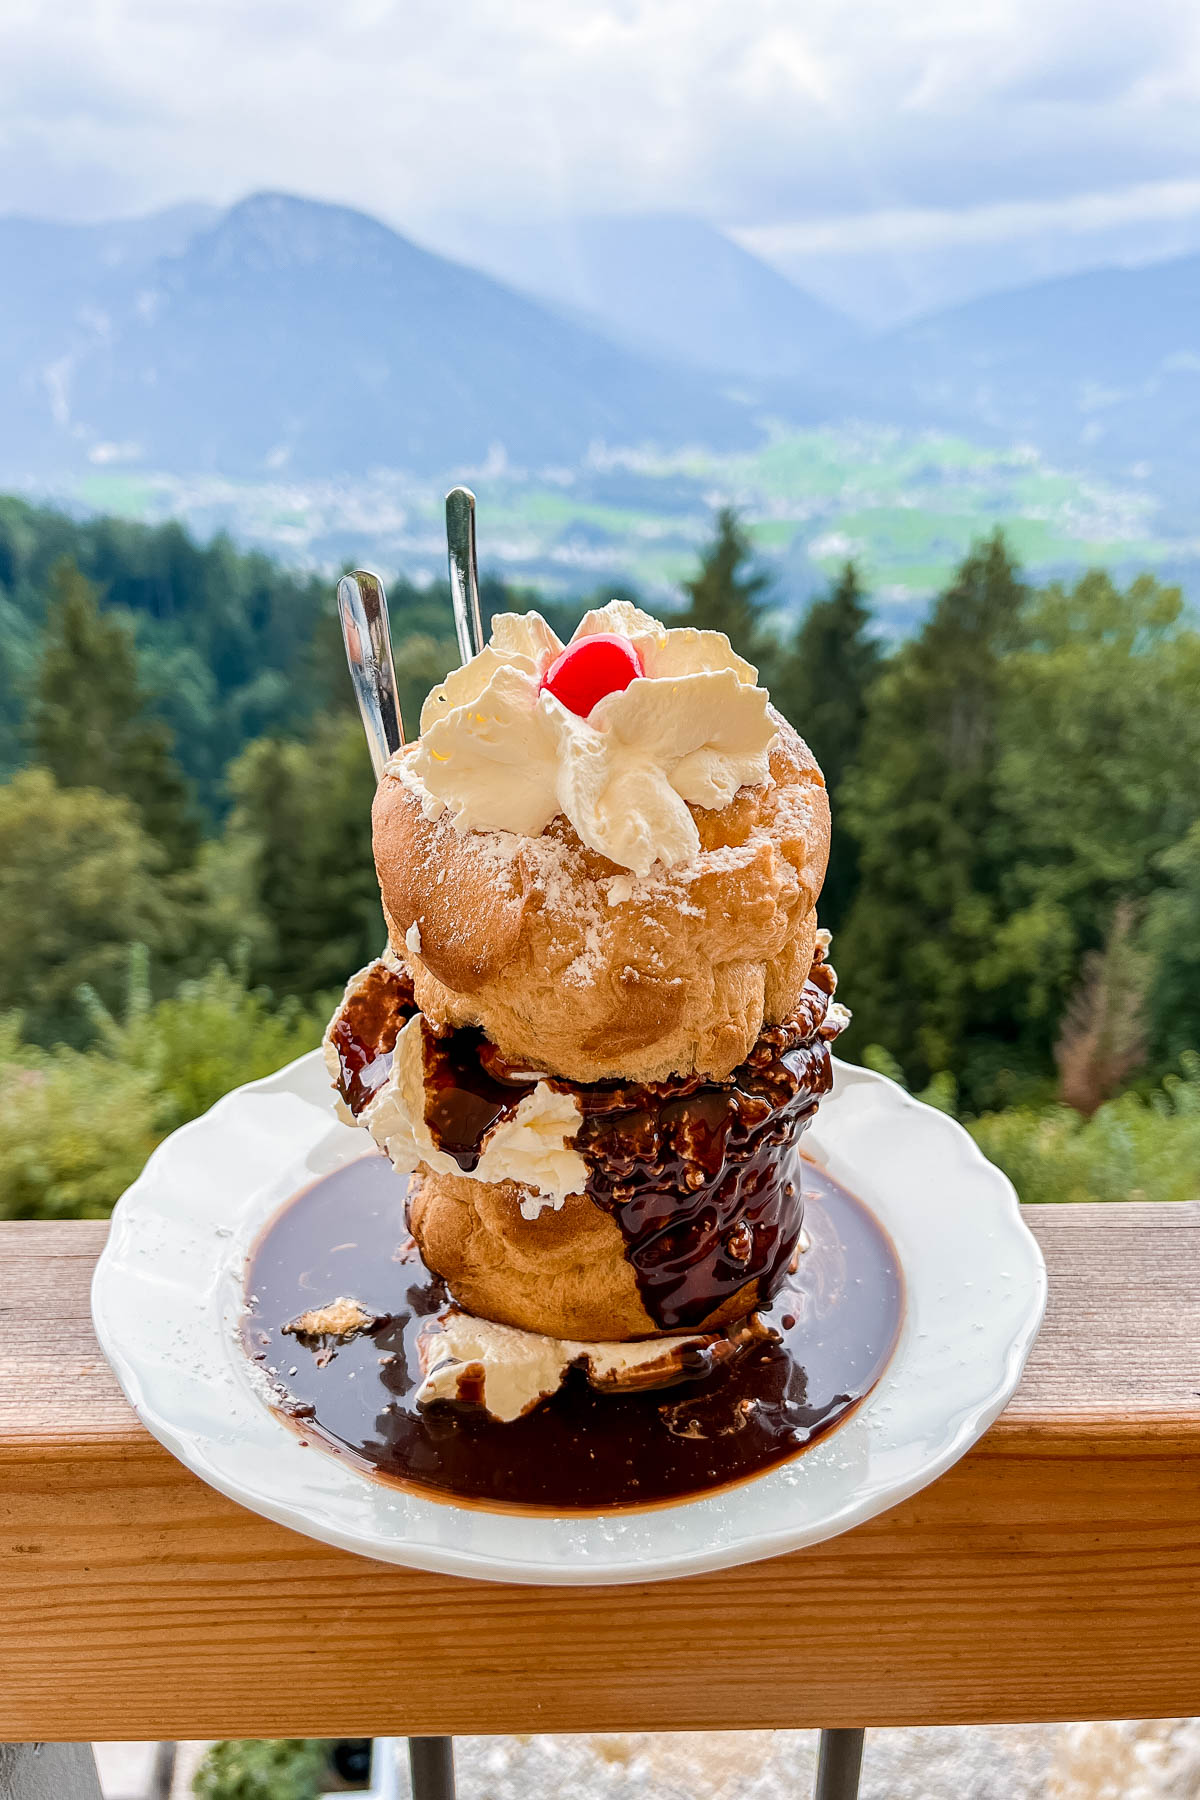 Cream puff at Restaurant Café Graflhöhe Windbeutelbaron, Berchtesgaden